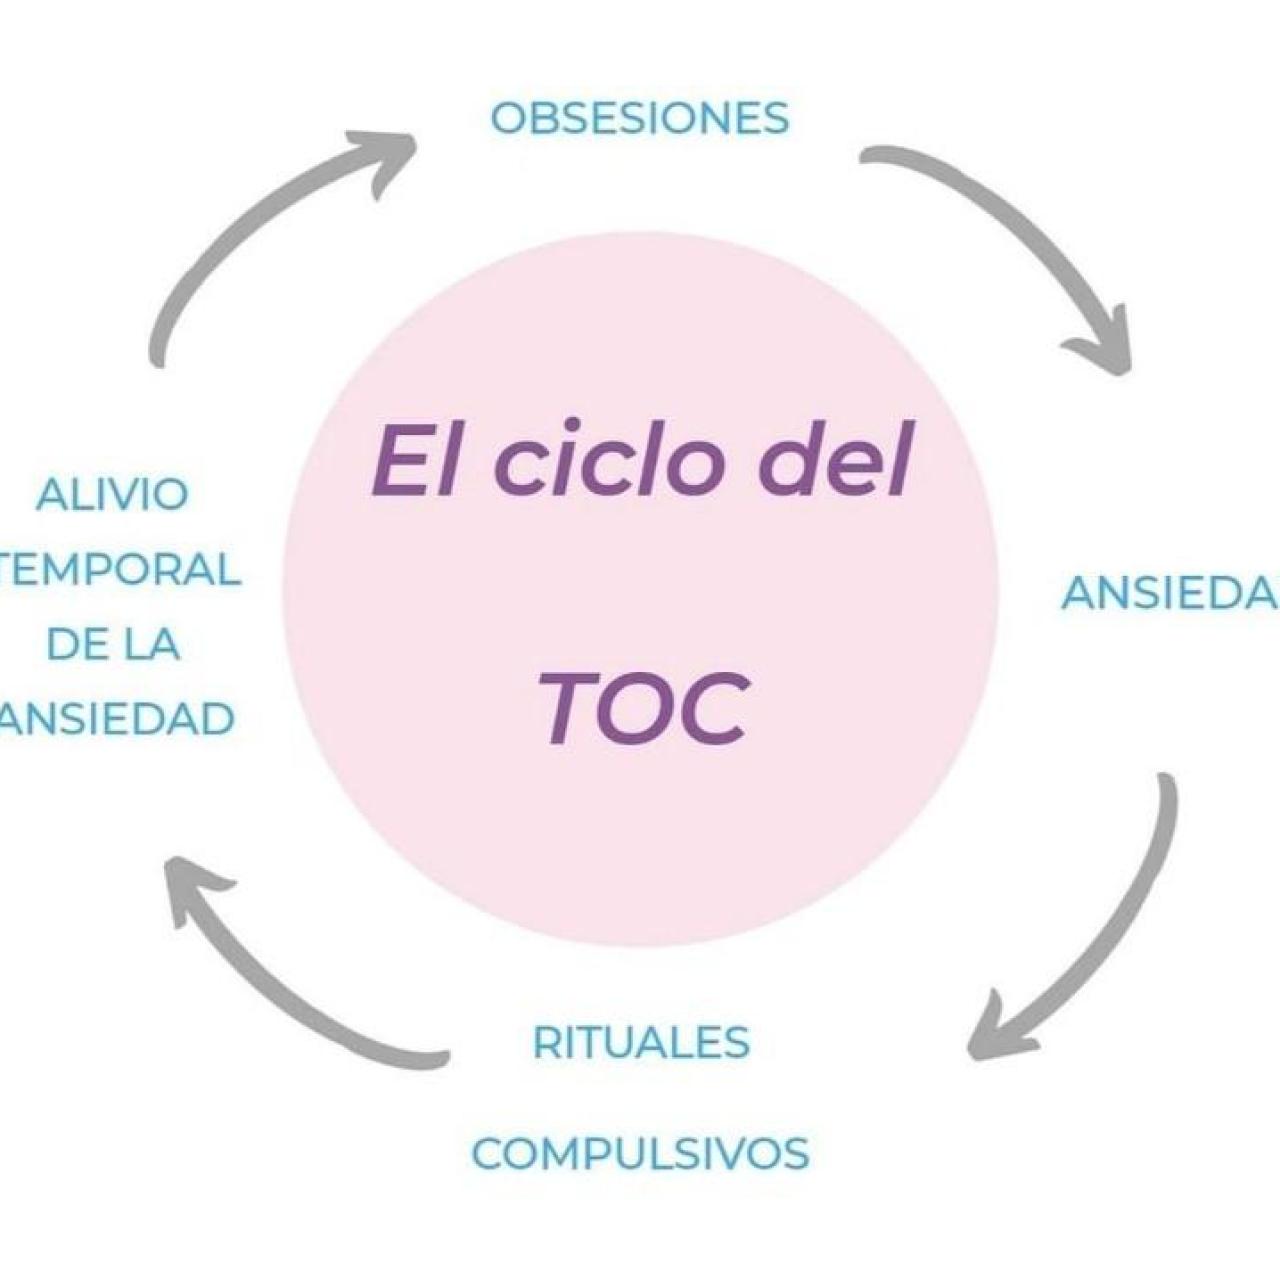 Imagen explicativa del ciclo del TOC.